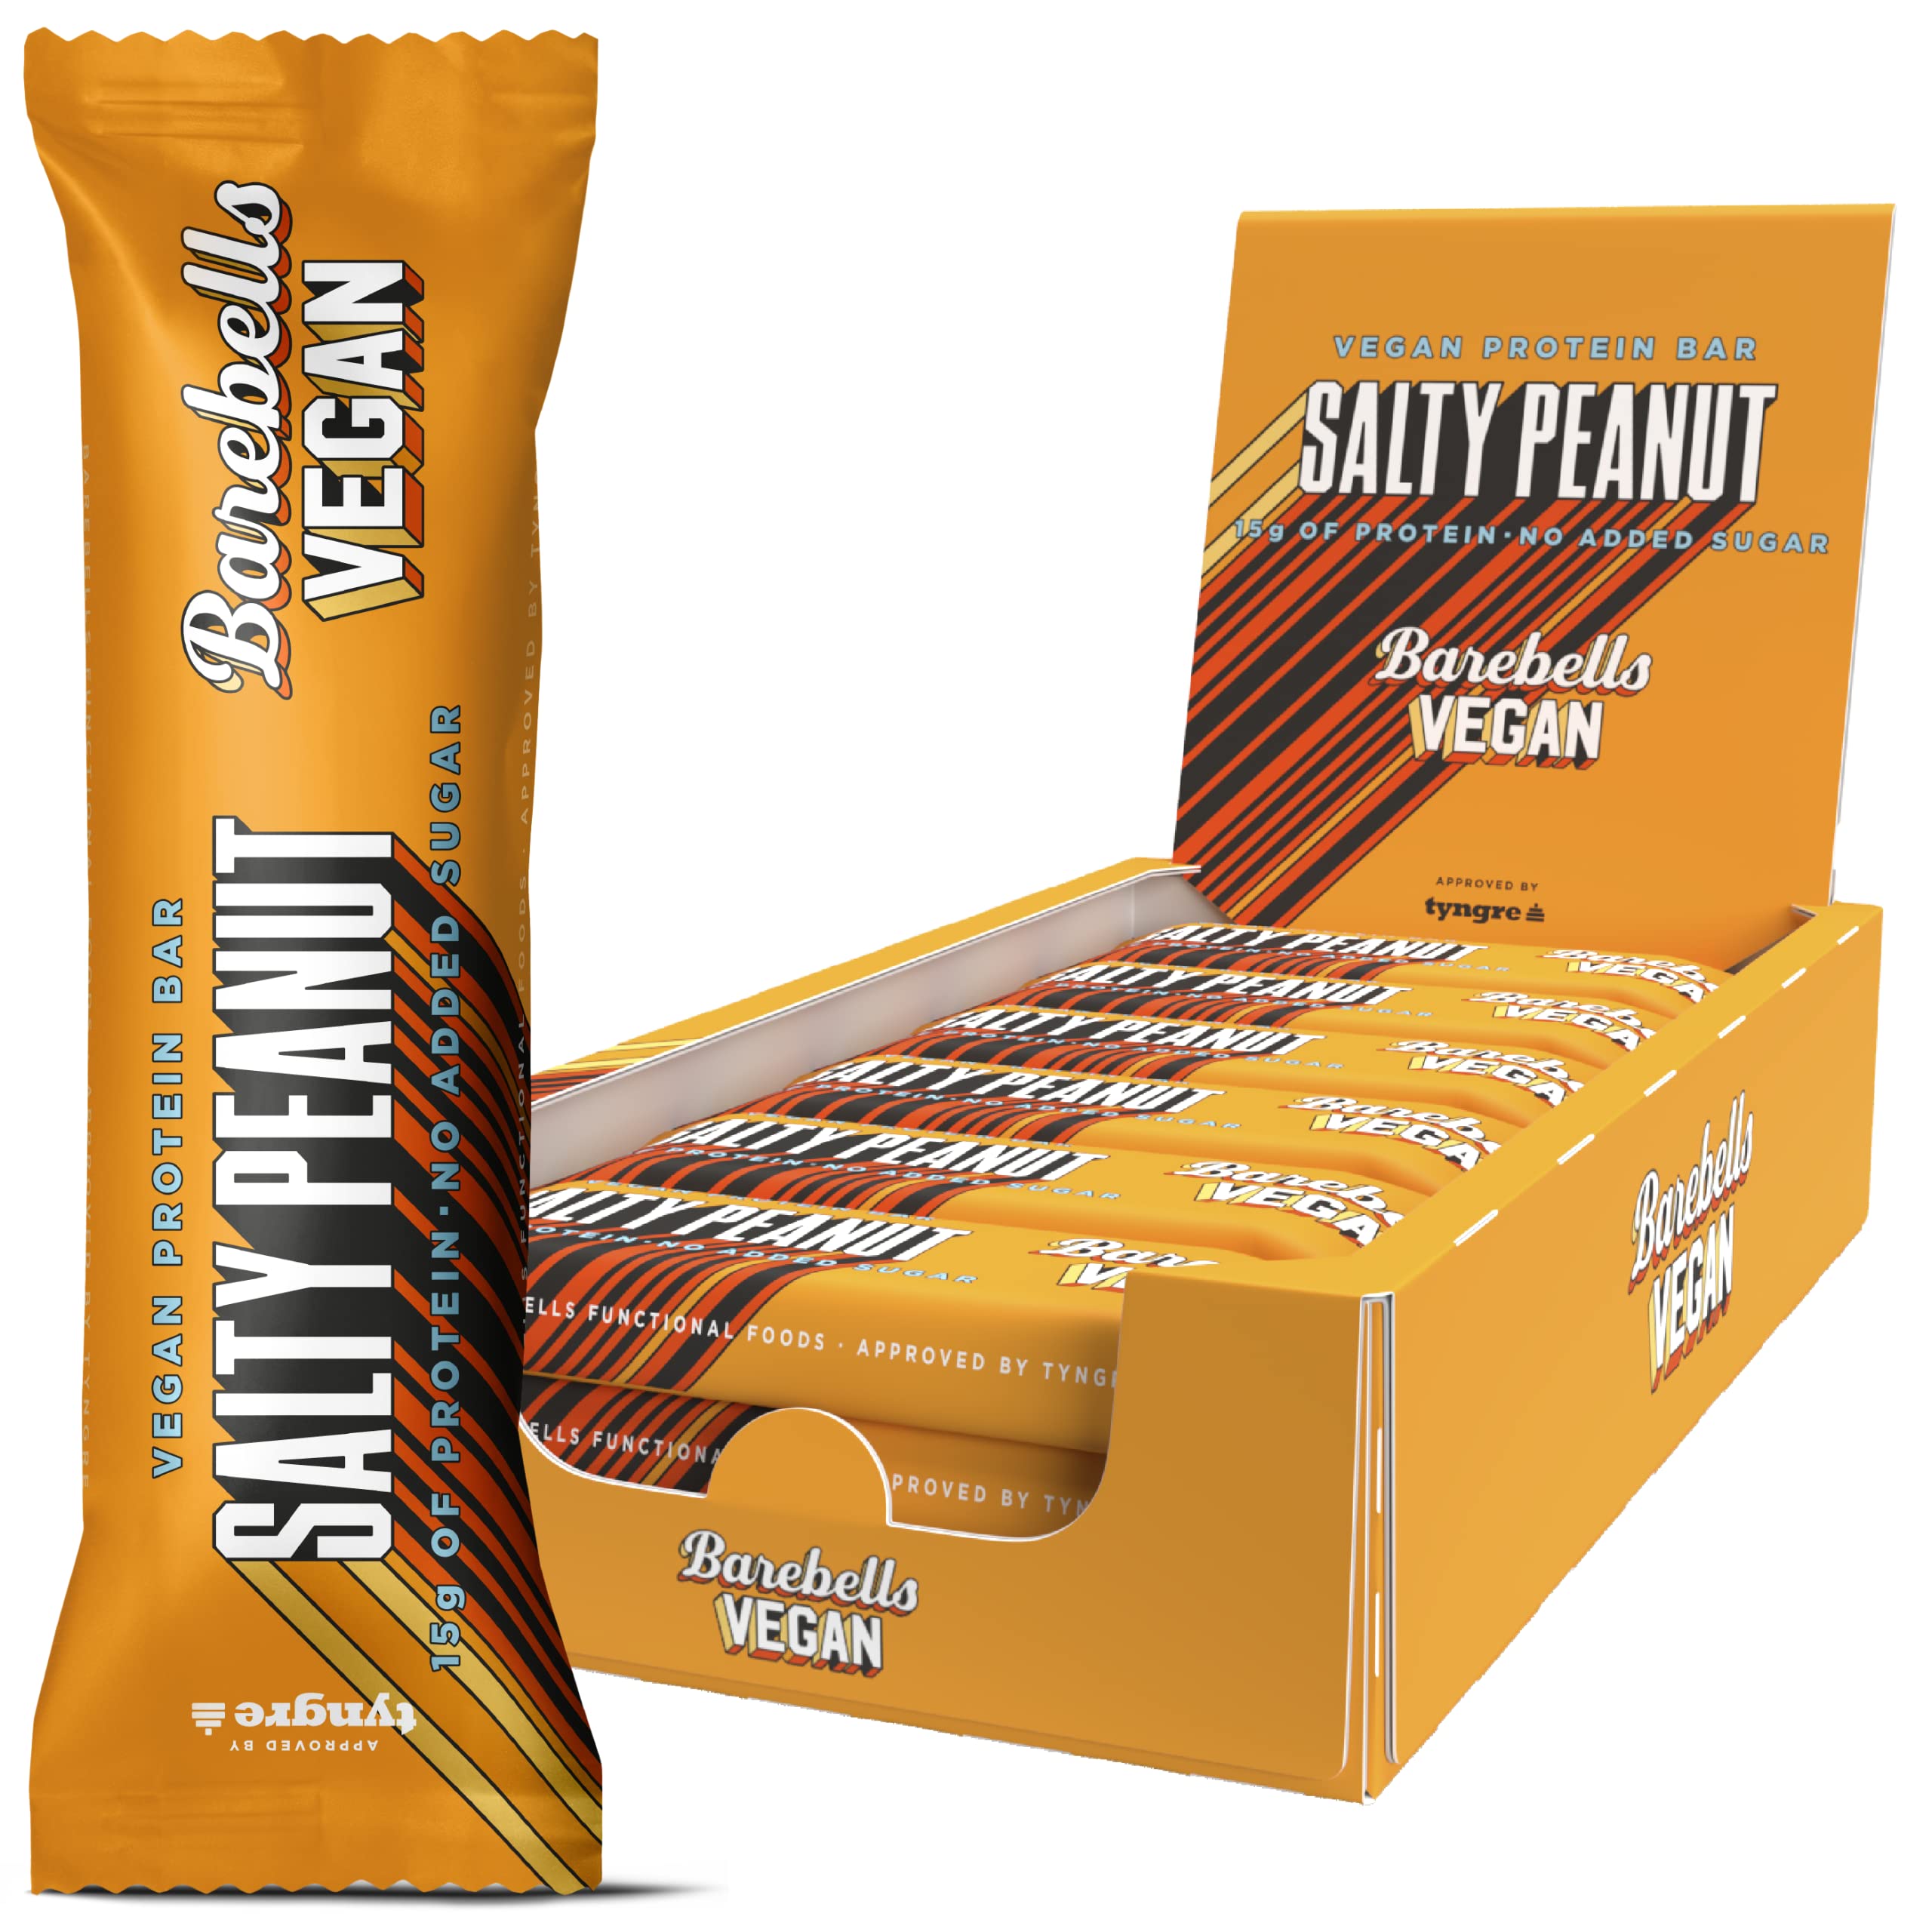 Barebells Proteinriegel – köstliche Eiweißriegel mit Schokolade – zuckerarm, 15 Gramm Protein, ohne Palmöl – Vegan Salty Peanut, 12 x 55gr